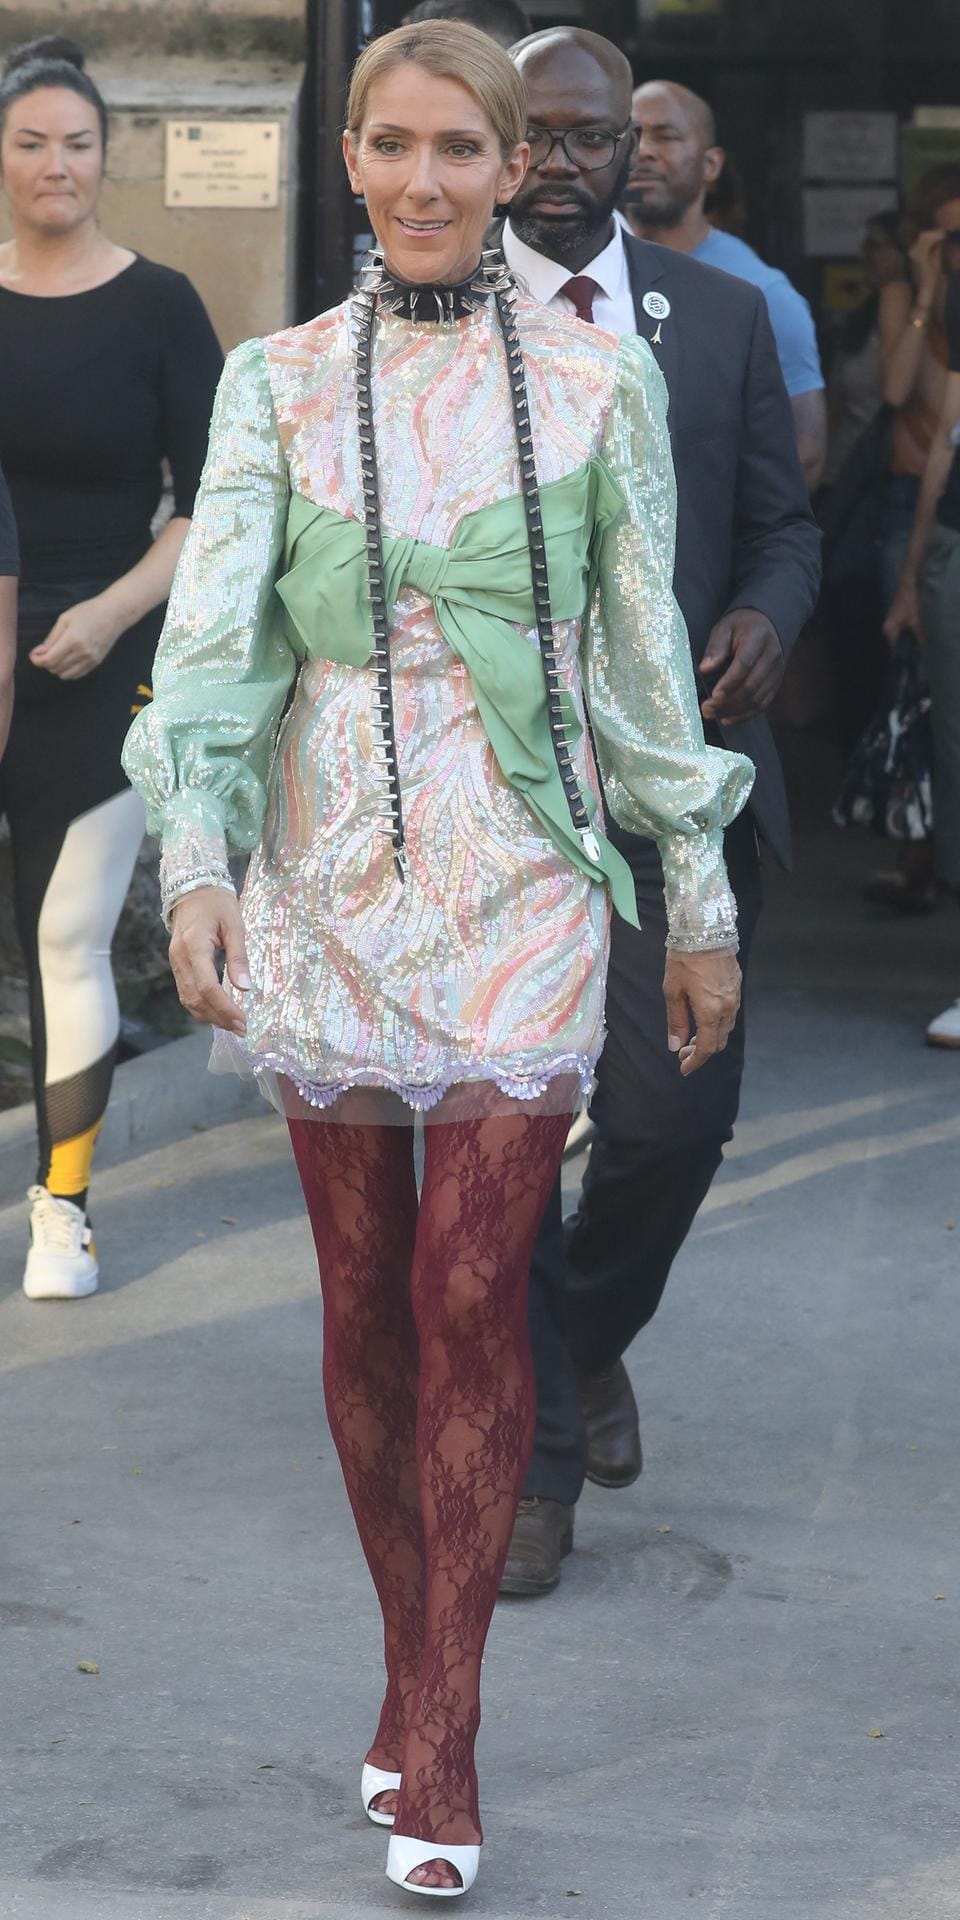 Zu einem Mini-Glitzerkleid kombinierte Céline Dion eine Punkkette und eine Spitzenstrumpfhose.